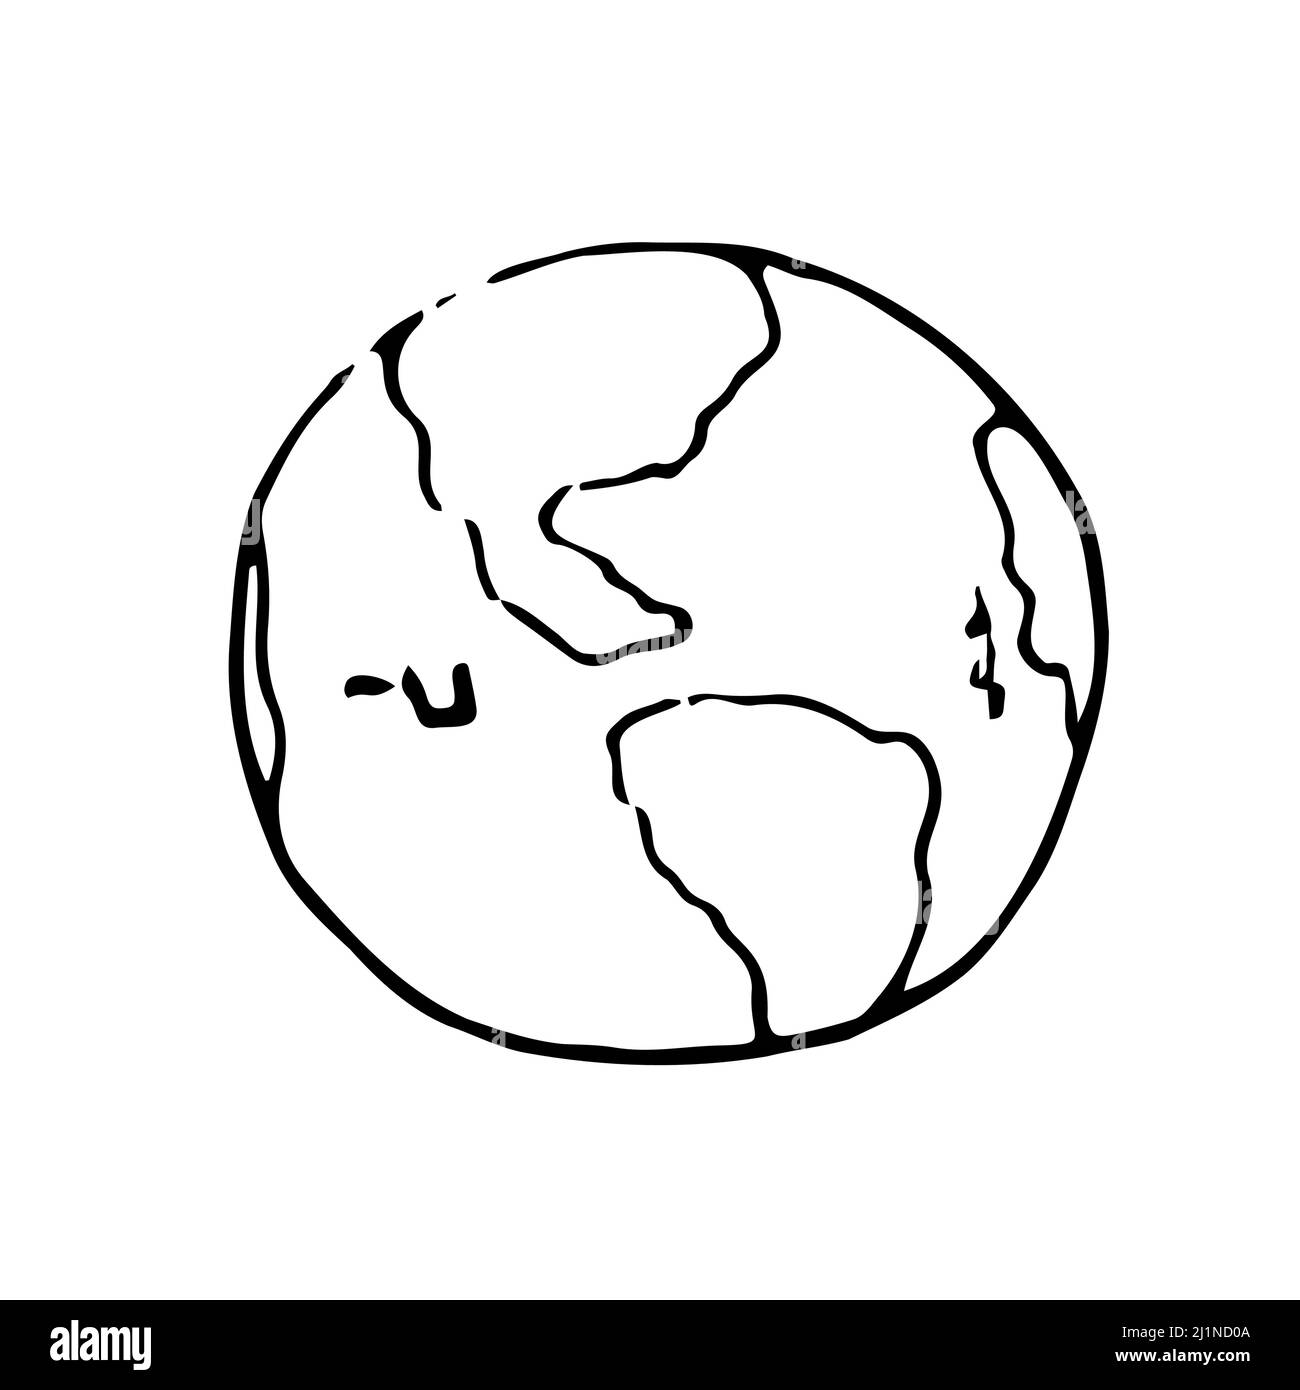 Dessin vectoriel de la carte du monde du cercle. Silhouette d'icône globe terrestre pour l'éducation et le concept du jour de la terre. Infographies, présentation géographique isoler Illustration de Vecteur